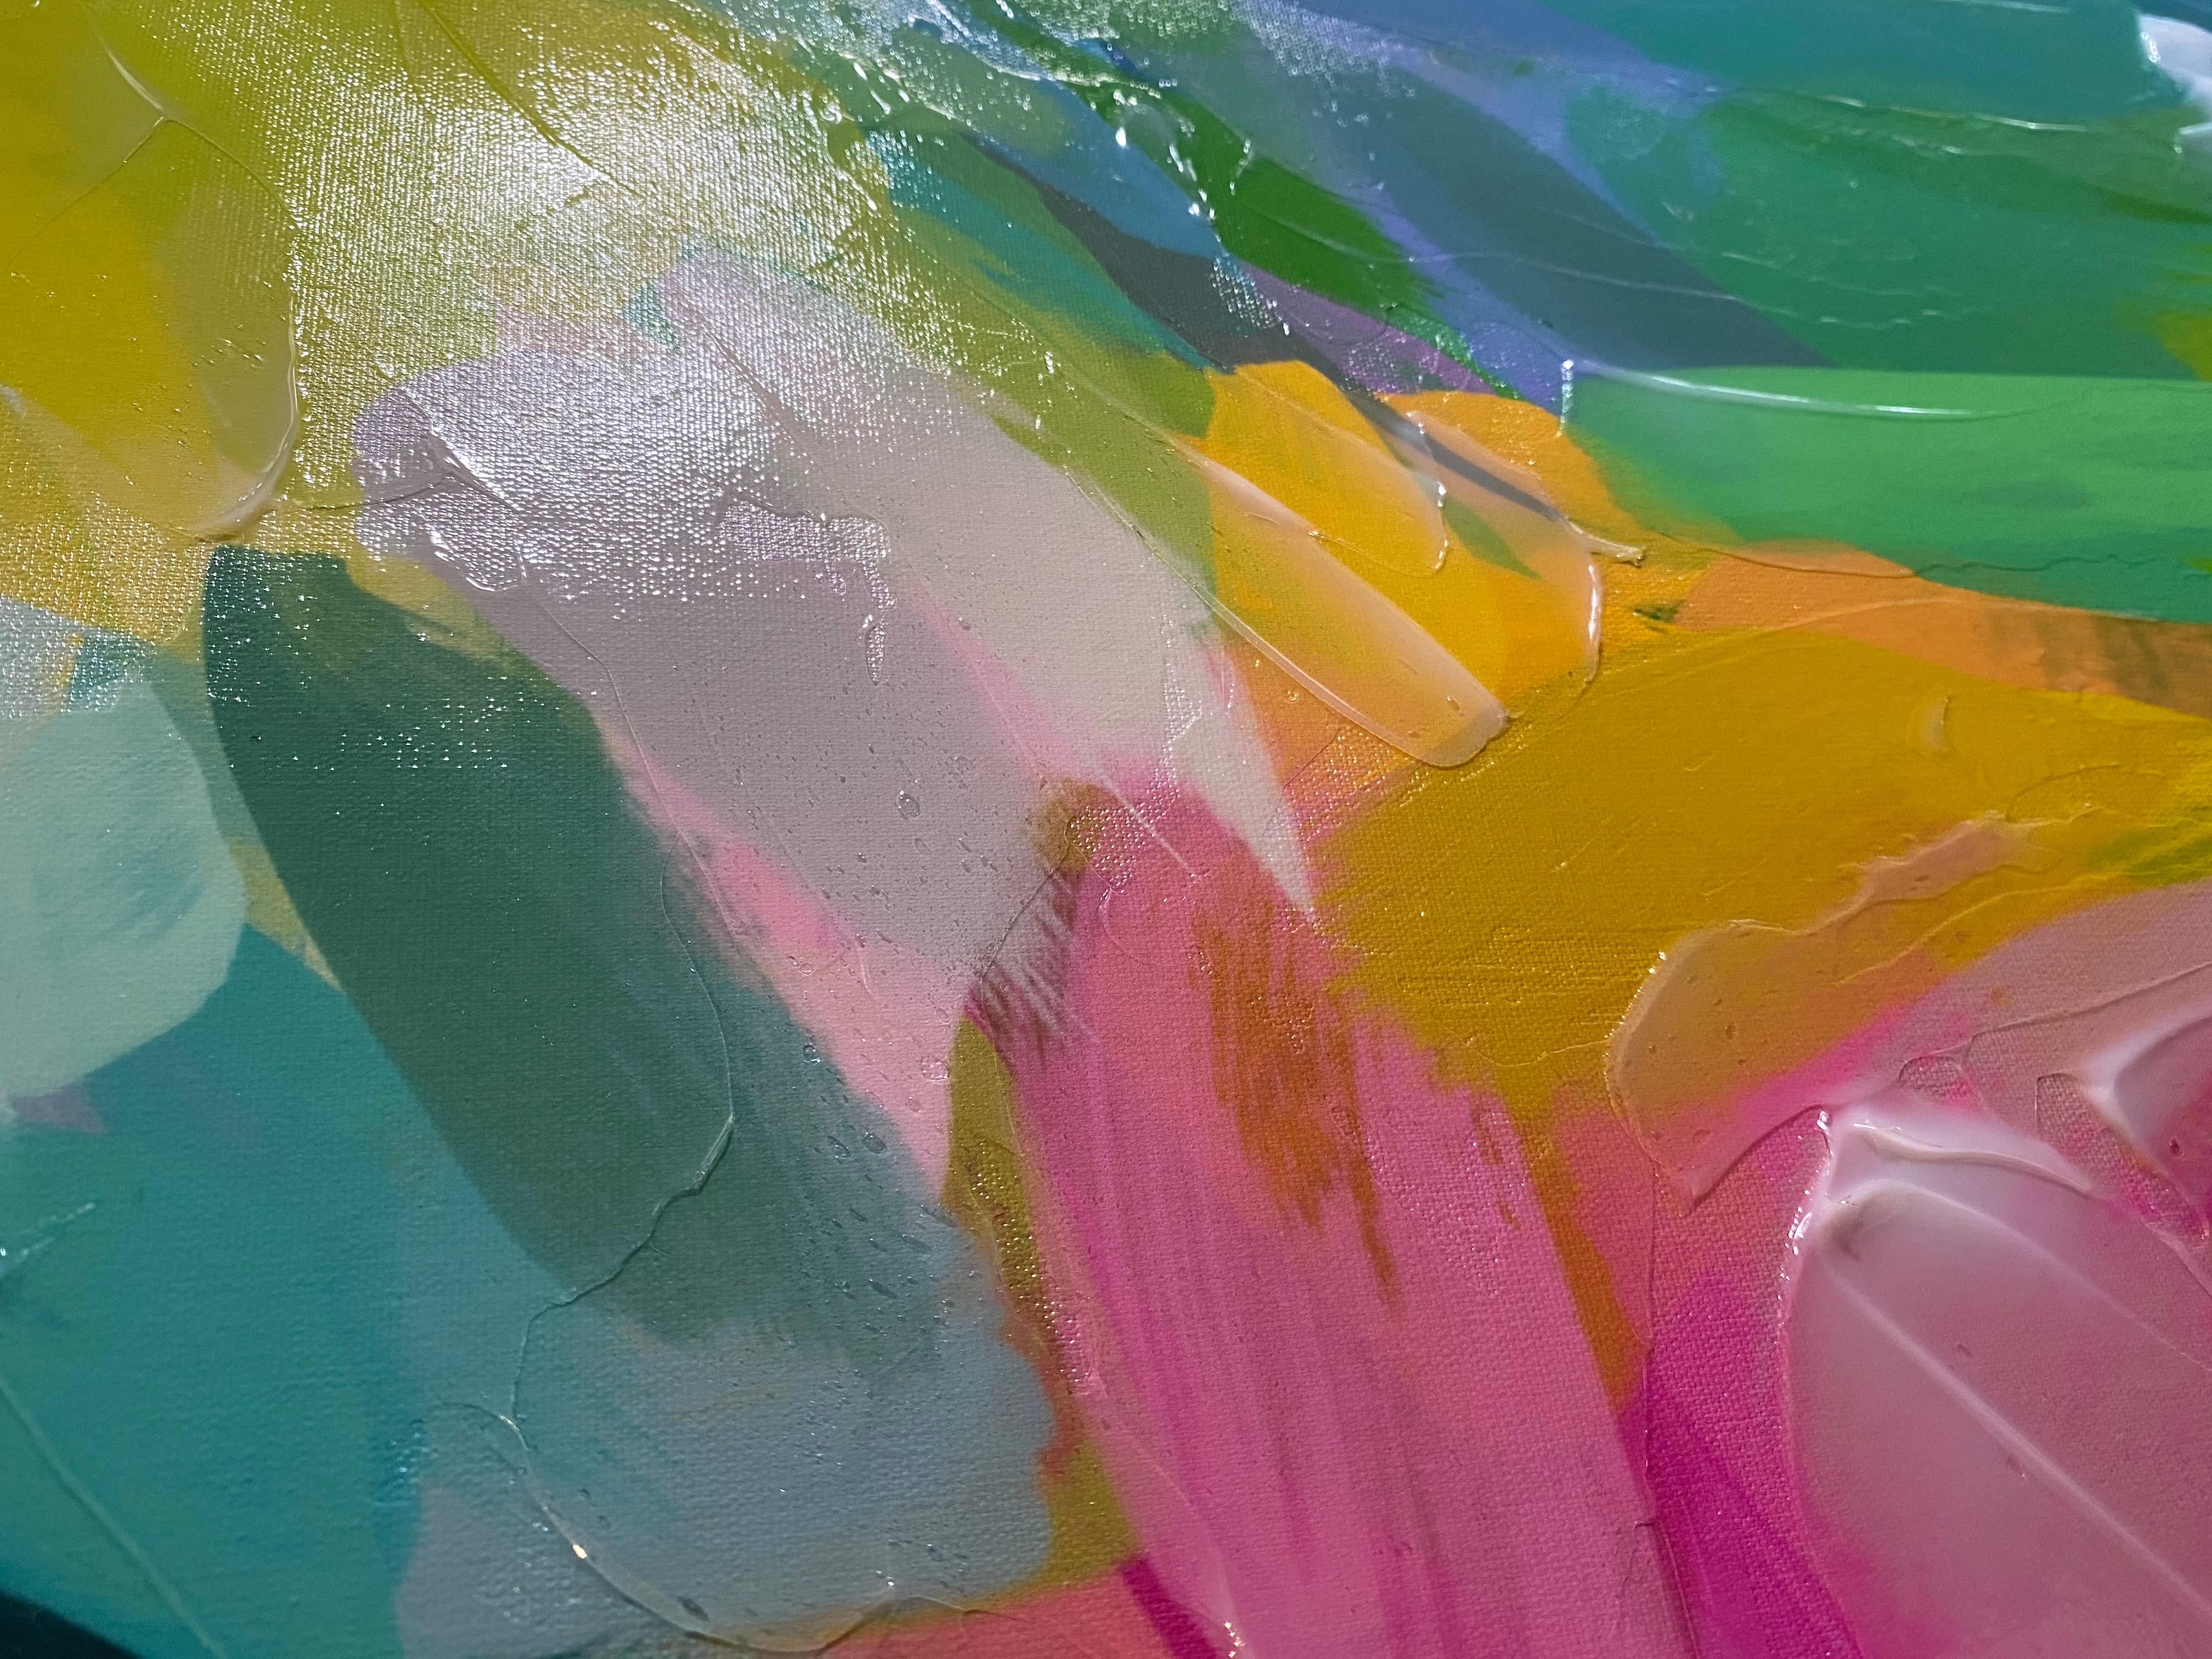 Rosa Grau Gemälde Kunst Hand strukturiert Giclee auf Leinwand 45x45